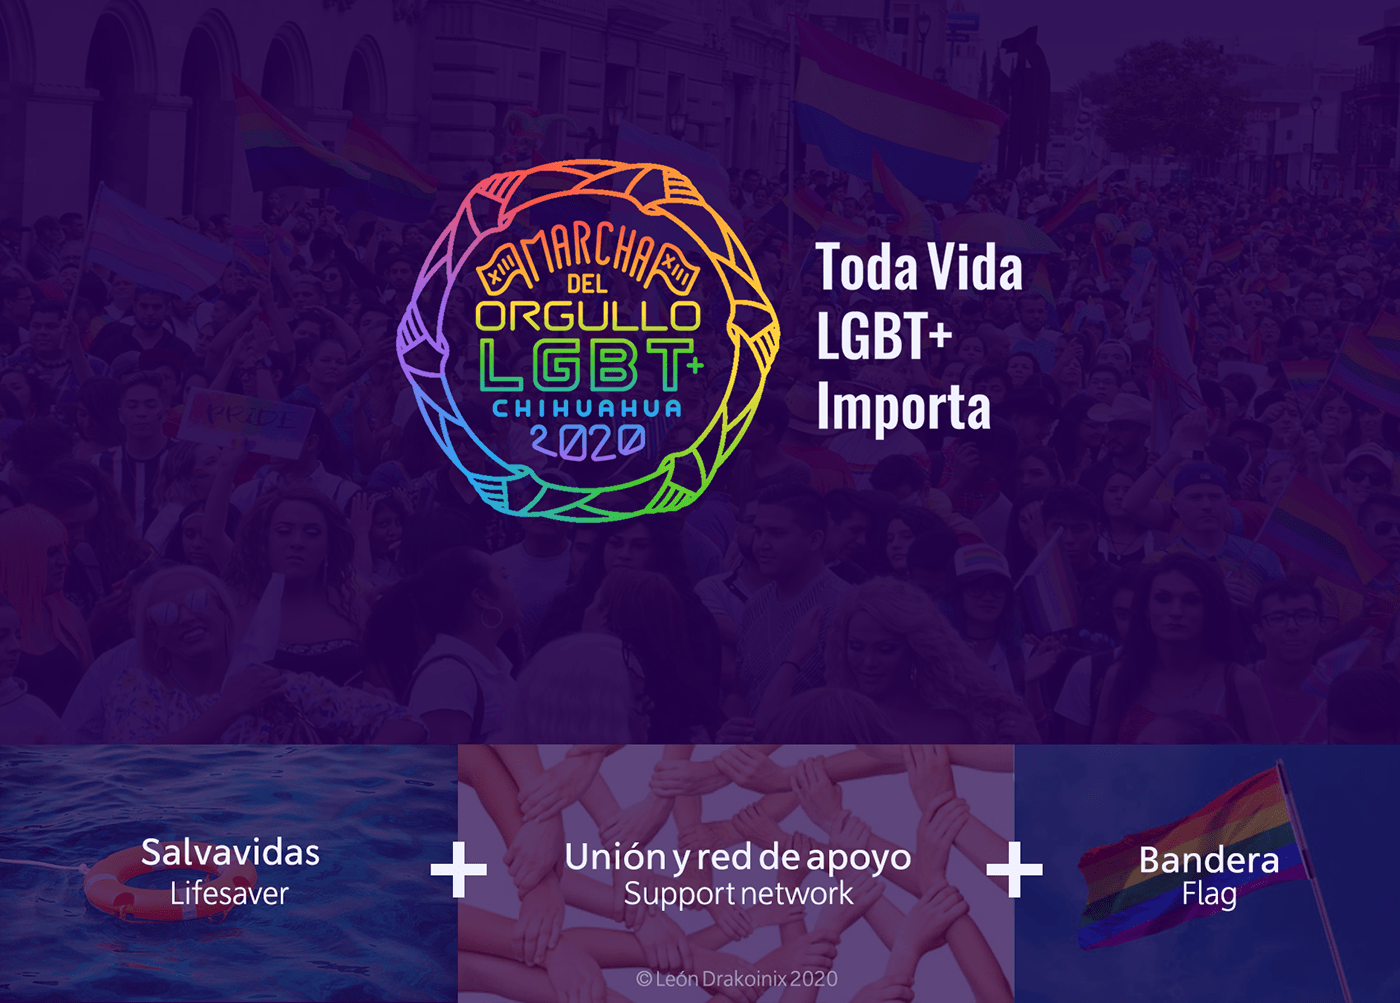 chihuahua gay lesbian LGBT lgbt+ LGBTTTI marcha lgbt orgullo pride TRANS